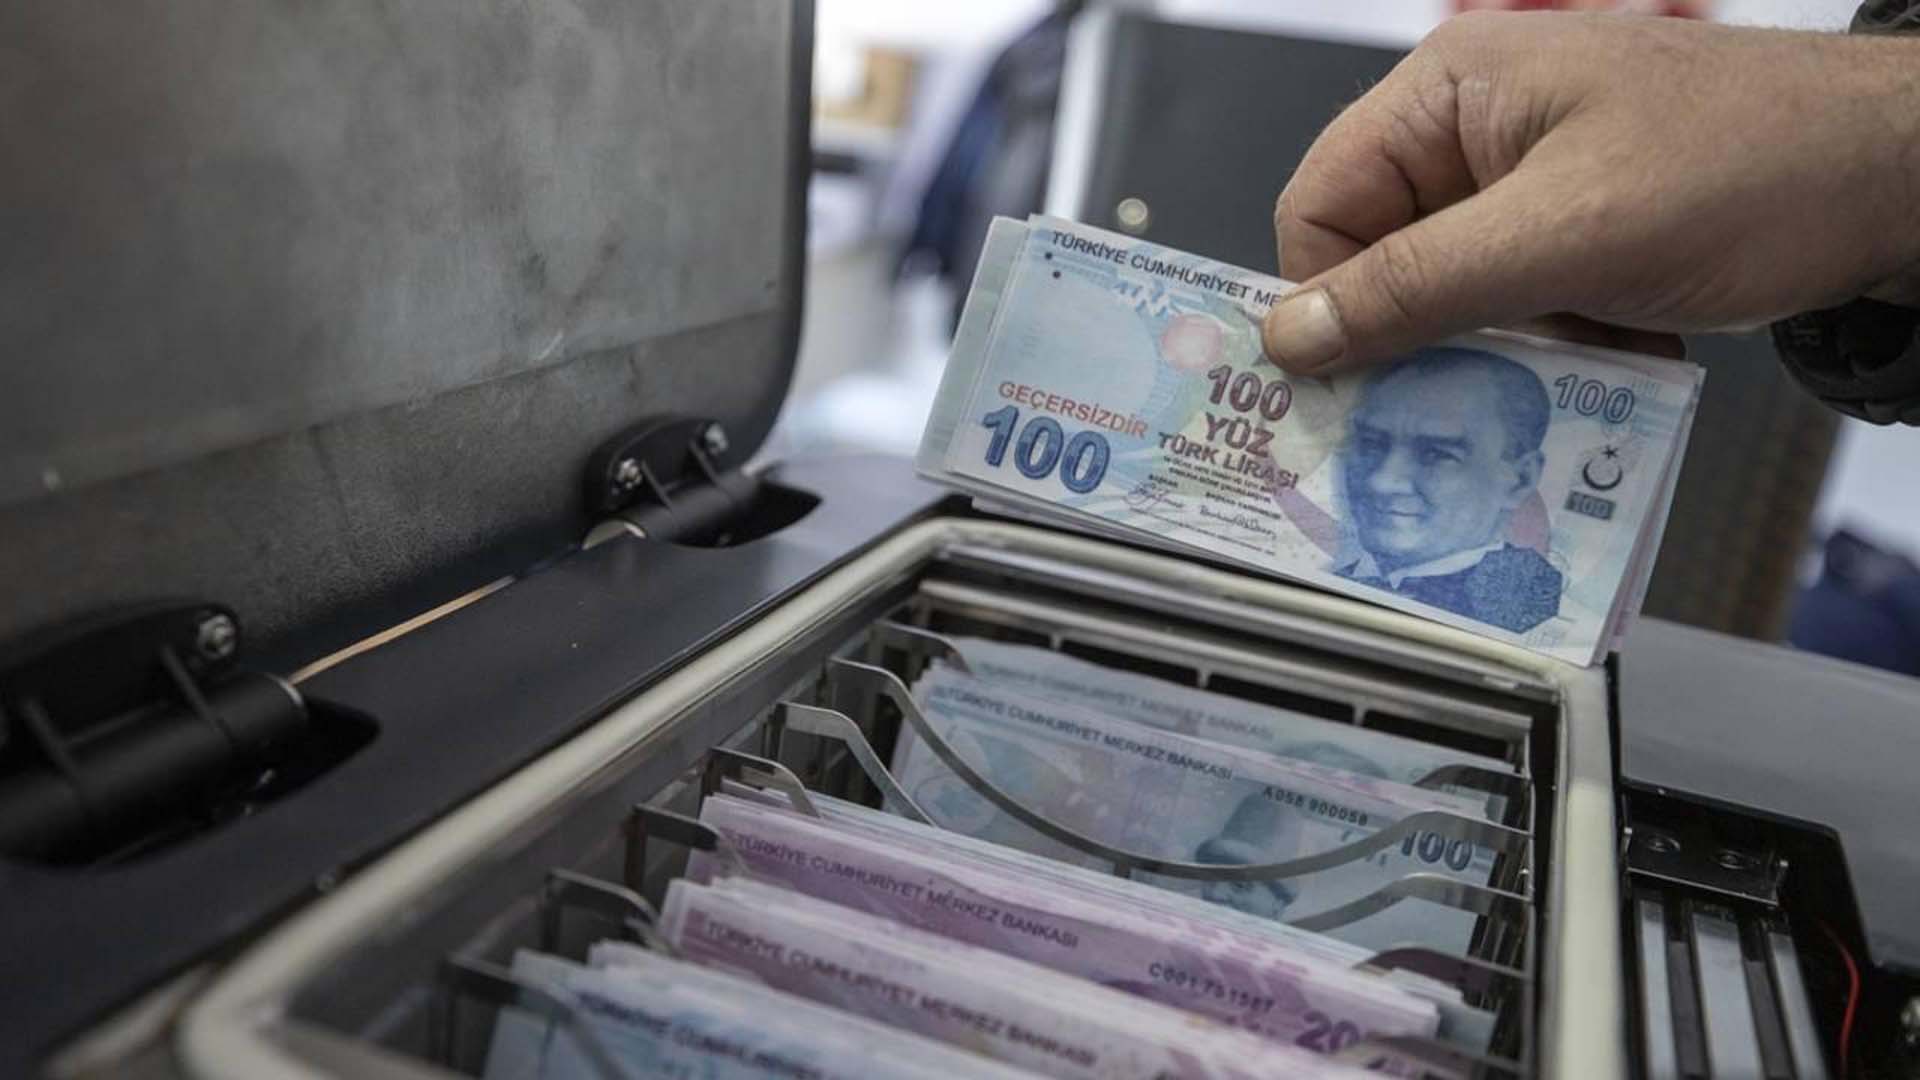 Kemal Kılıçdaroğlu'ndan asgari ücret zammı açıklaması: Güncellenmesi lazım, asgari ücret olmaktan çıktı zaten 